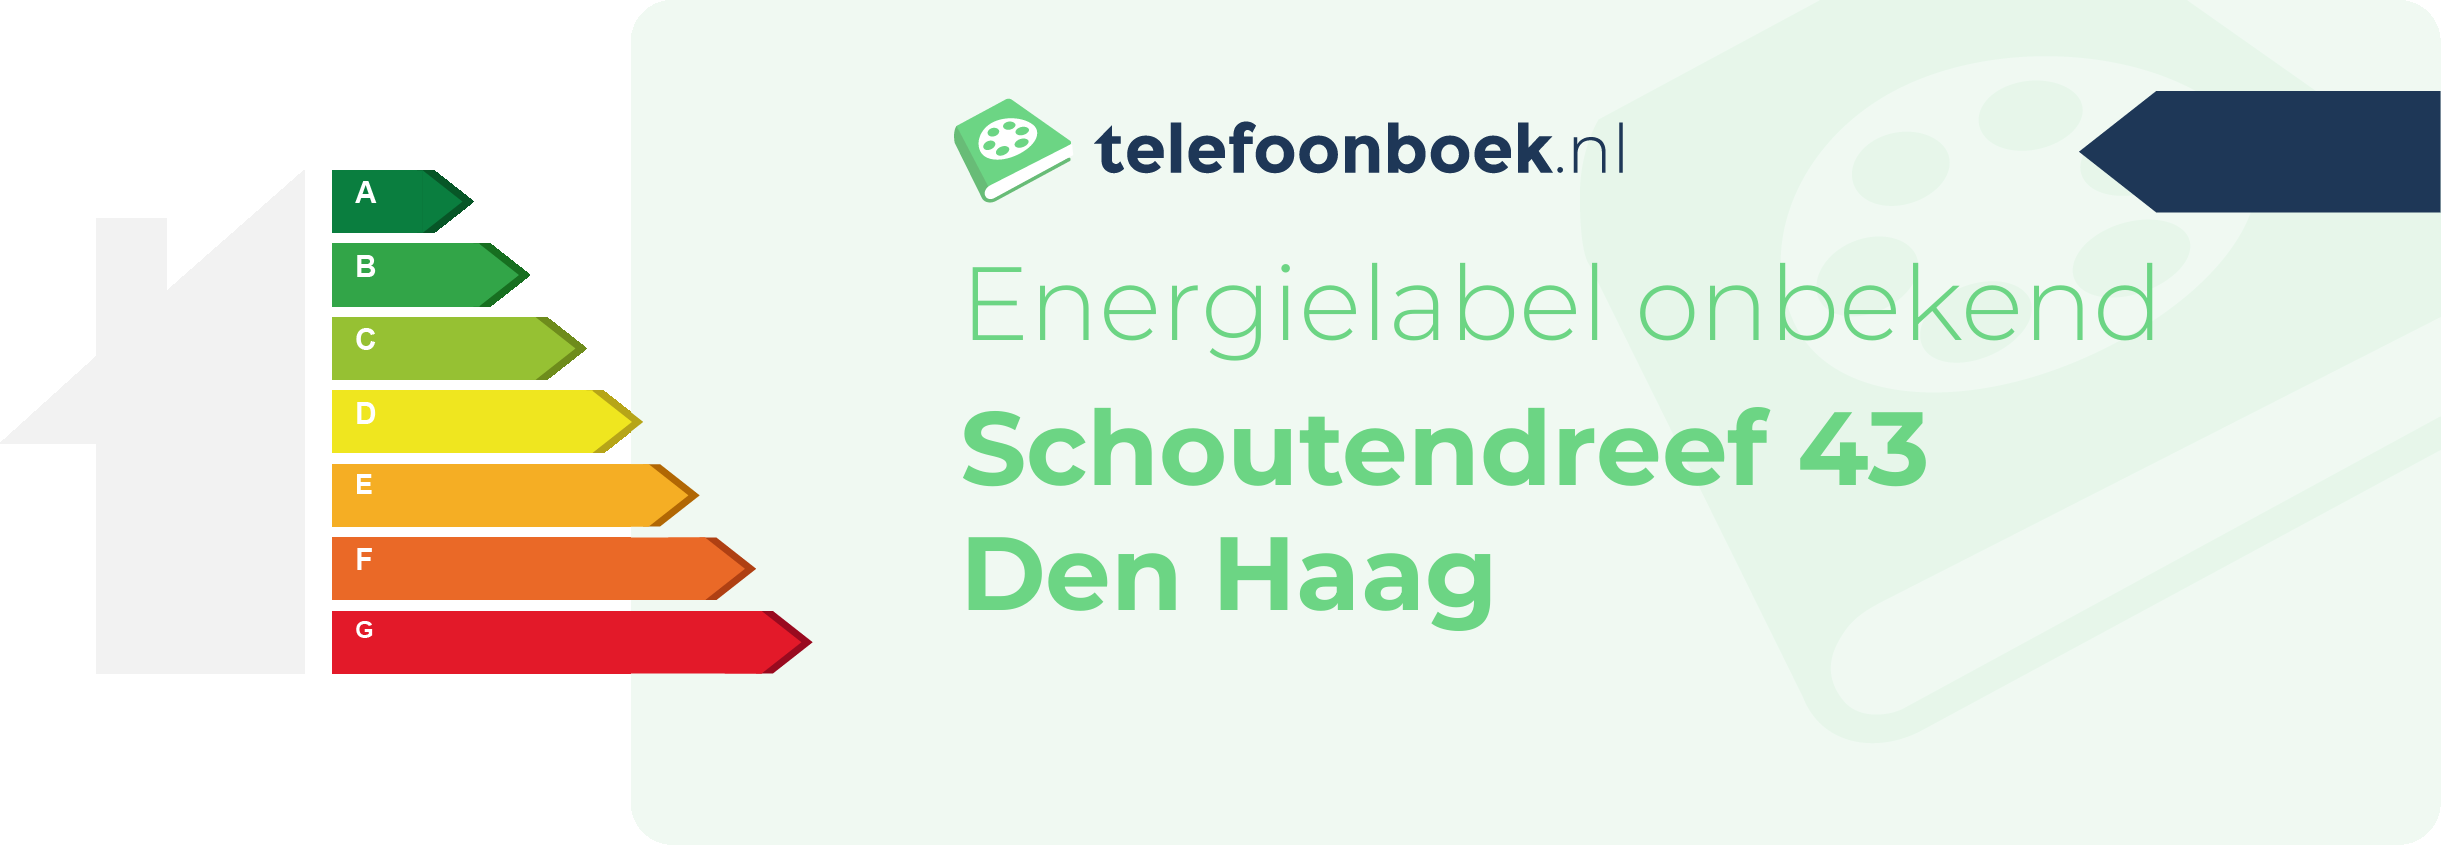 Energielabel Schoutendreef 43 Den Haag